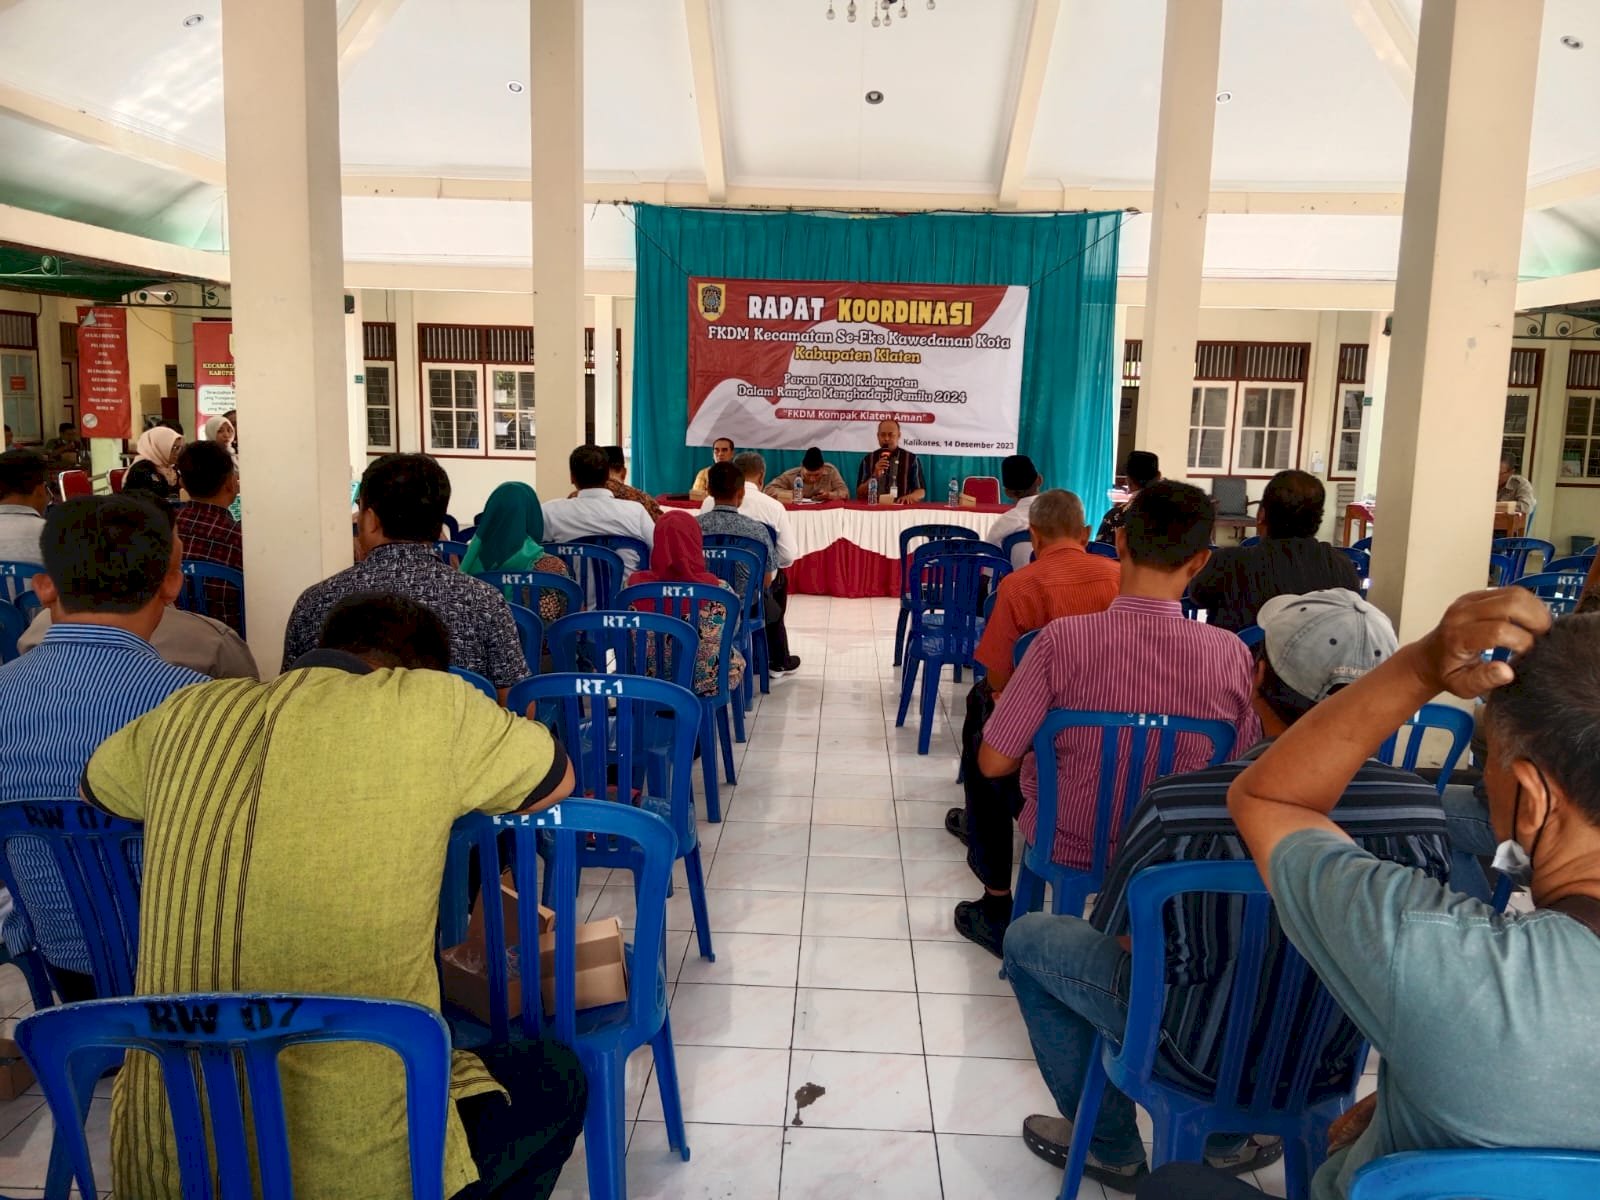 Rapat Koordinasi FKDM Kecamatan Se-Eks Kawedanan Kota